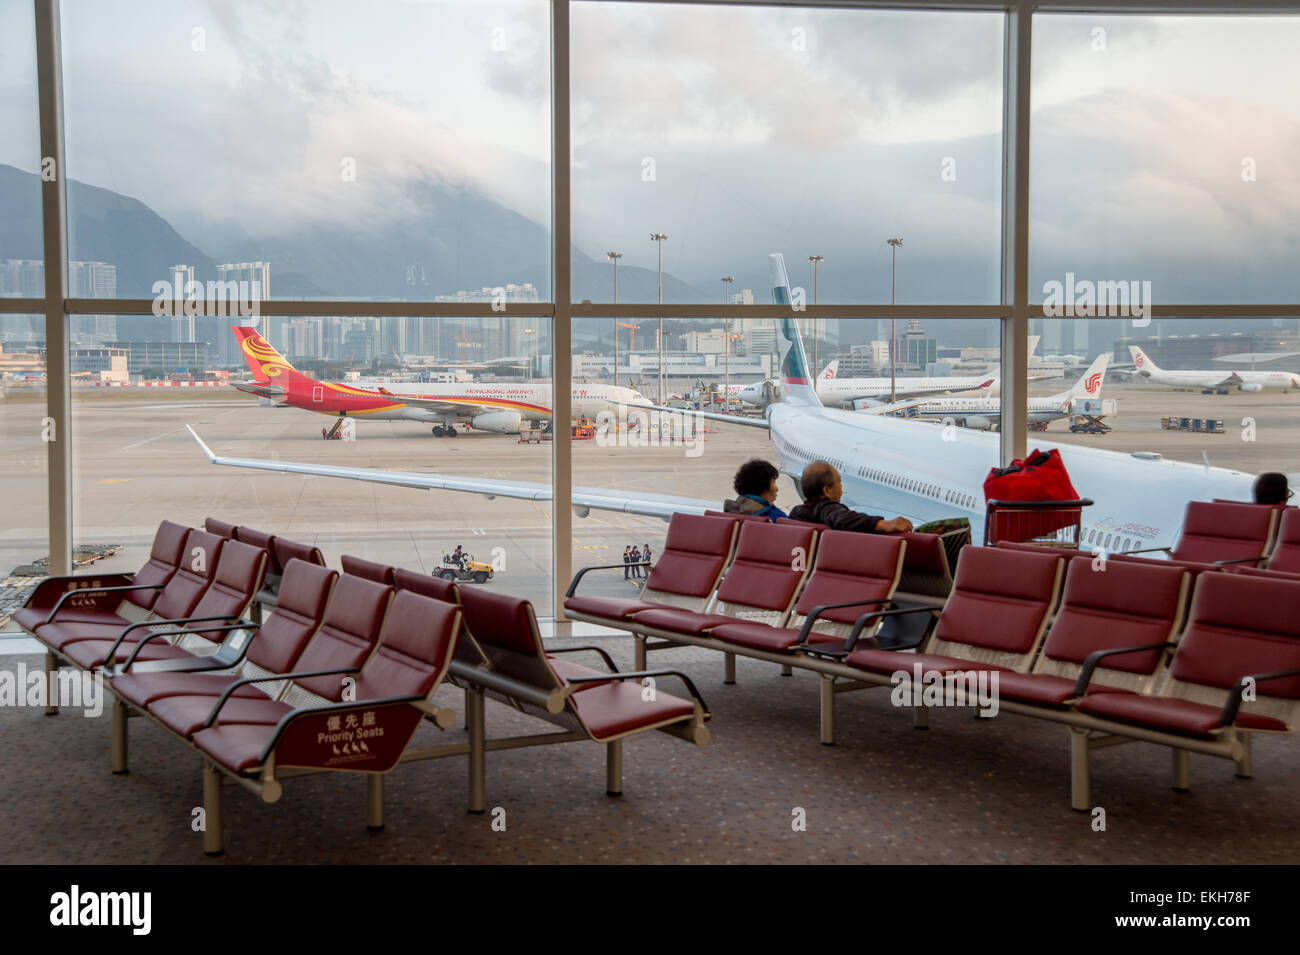 Passengers waiting for their flights at Hong-Kong Airport Stock Photo